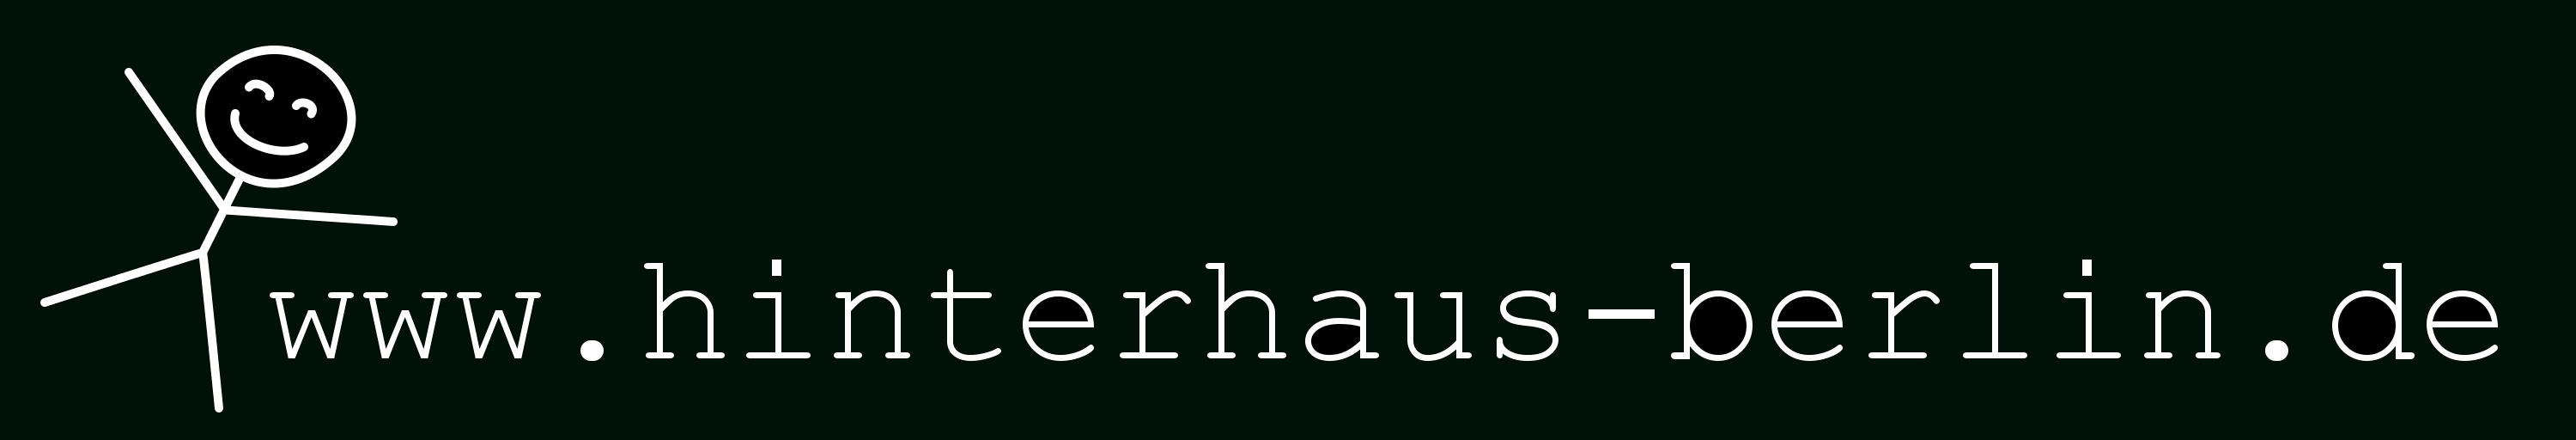 www.hinterhaus-berlin.de